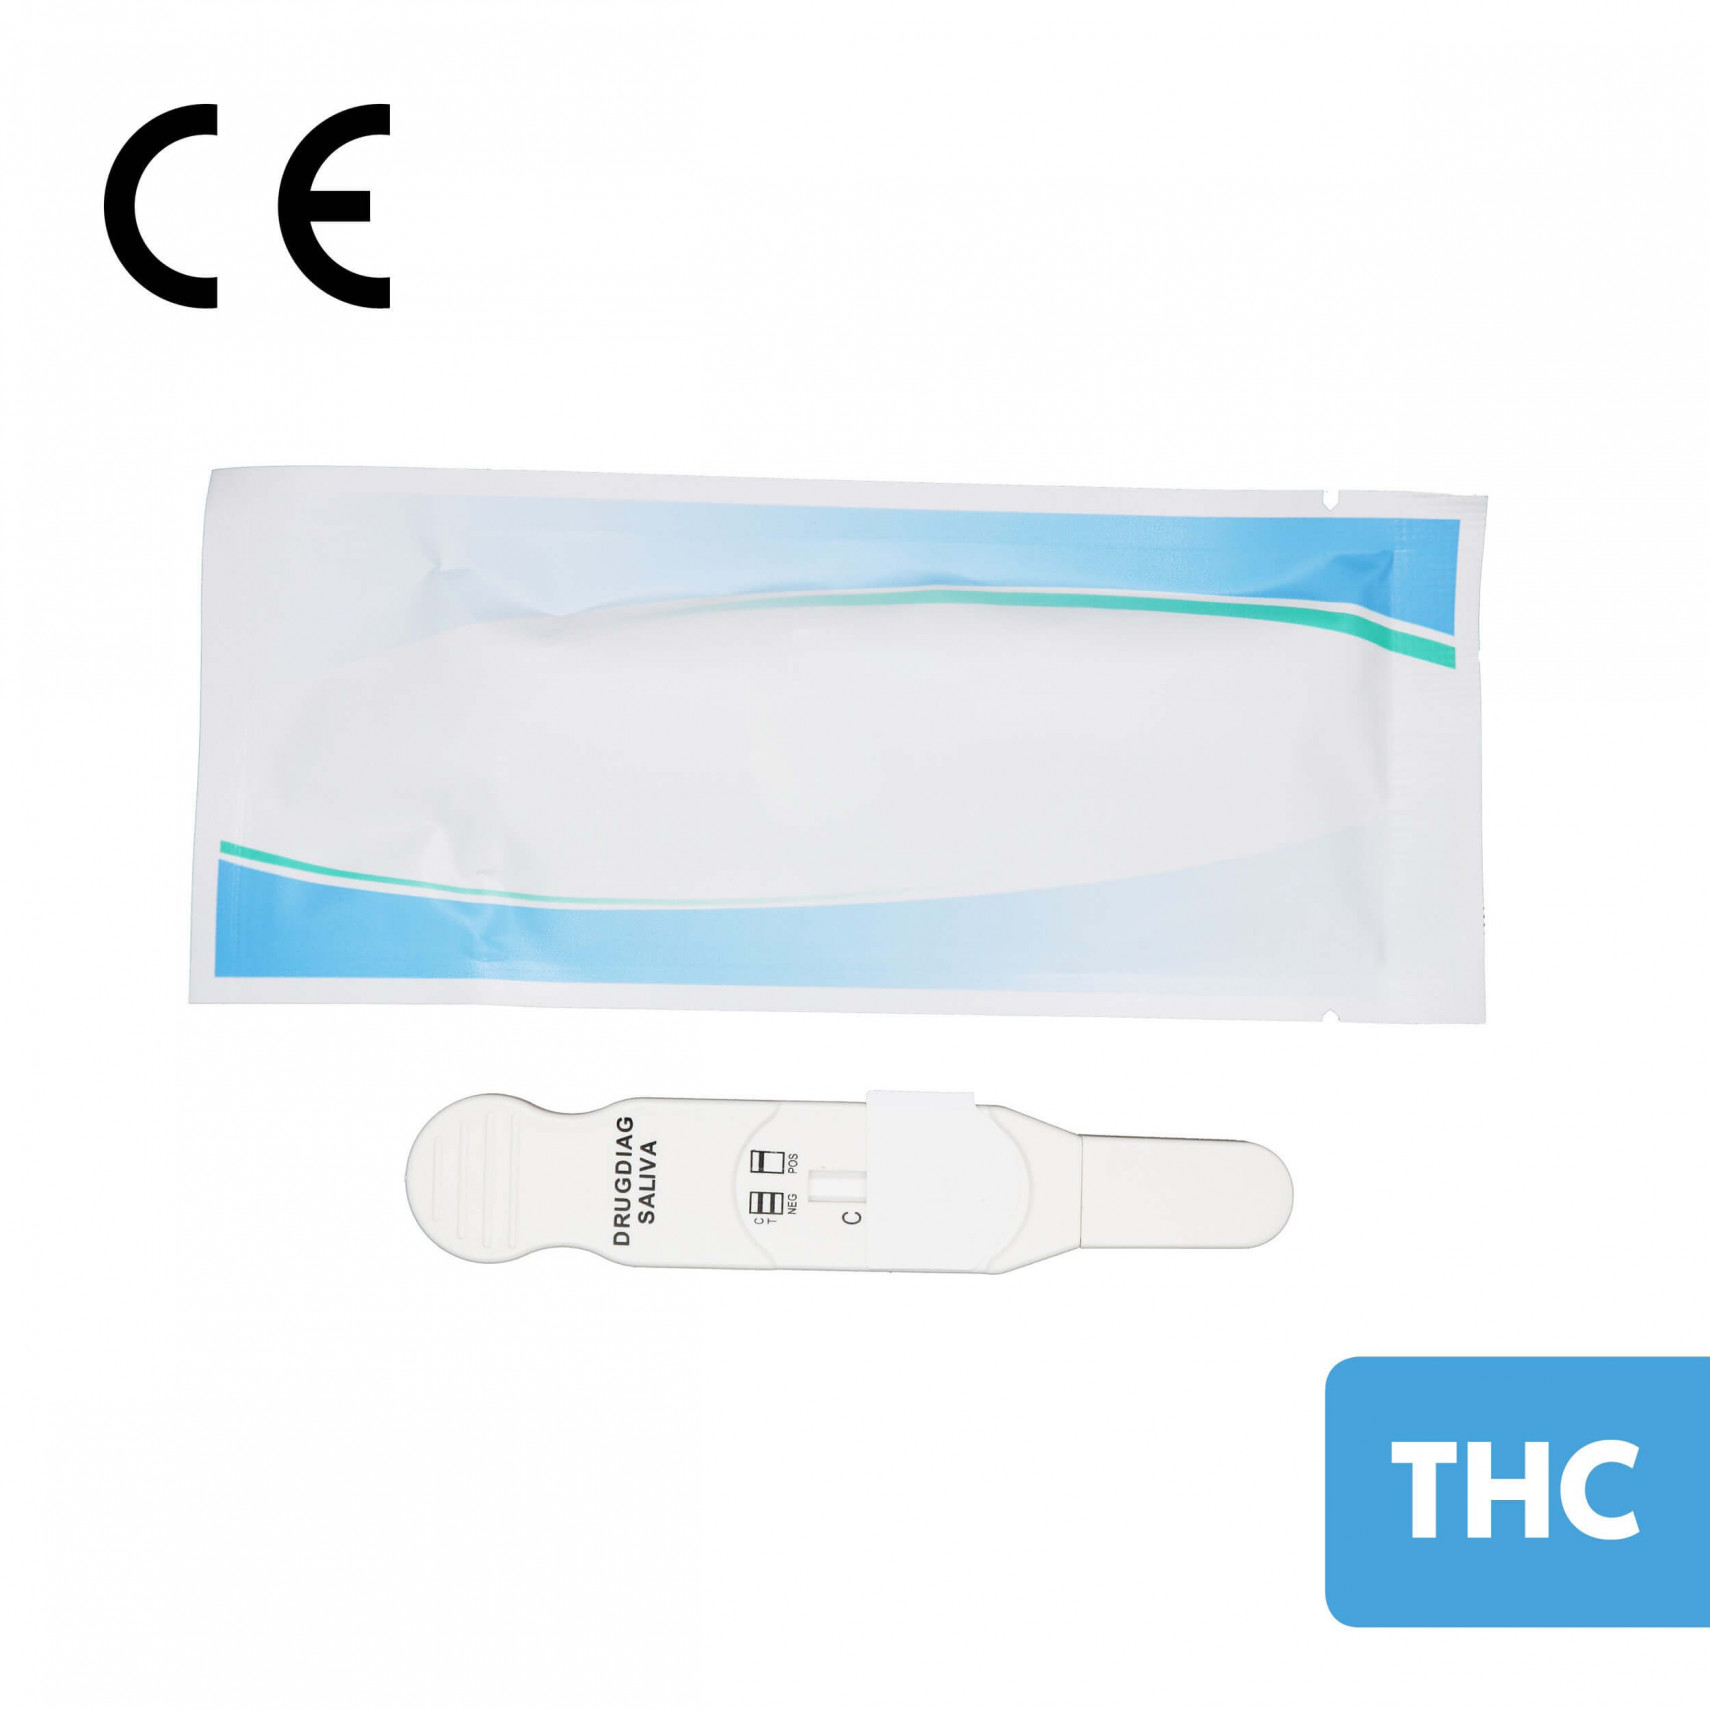 Test urinaire Drugdiag 3 THC pour dépistage du cannabis